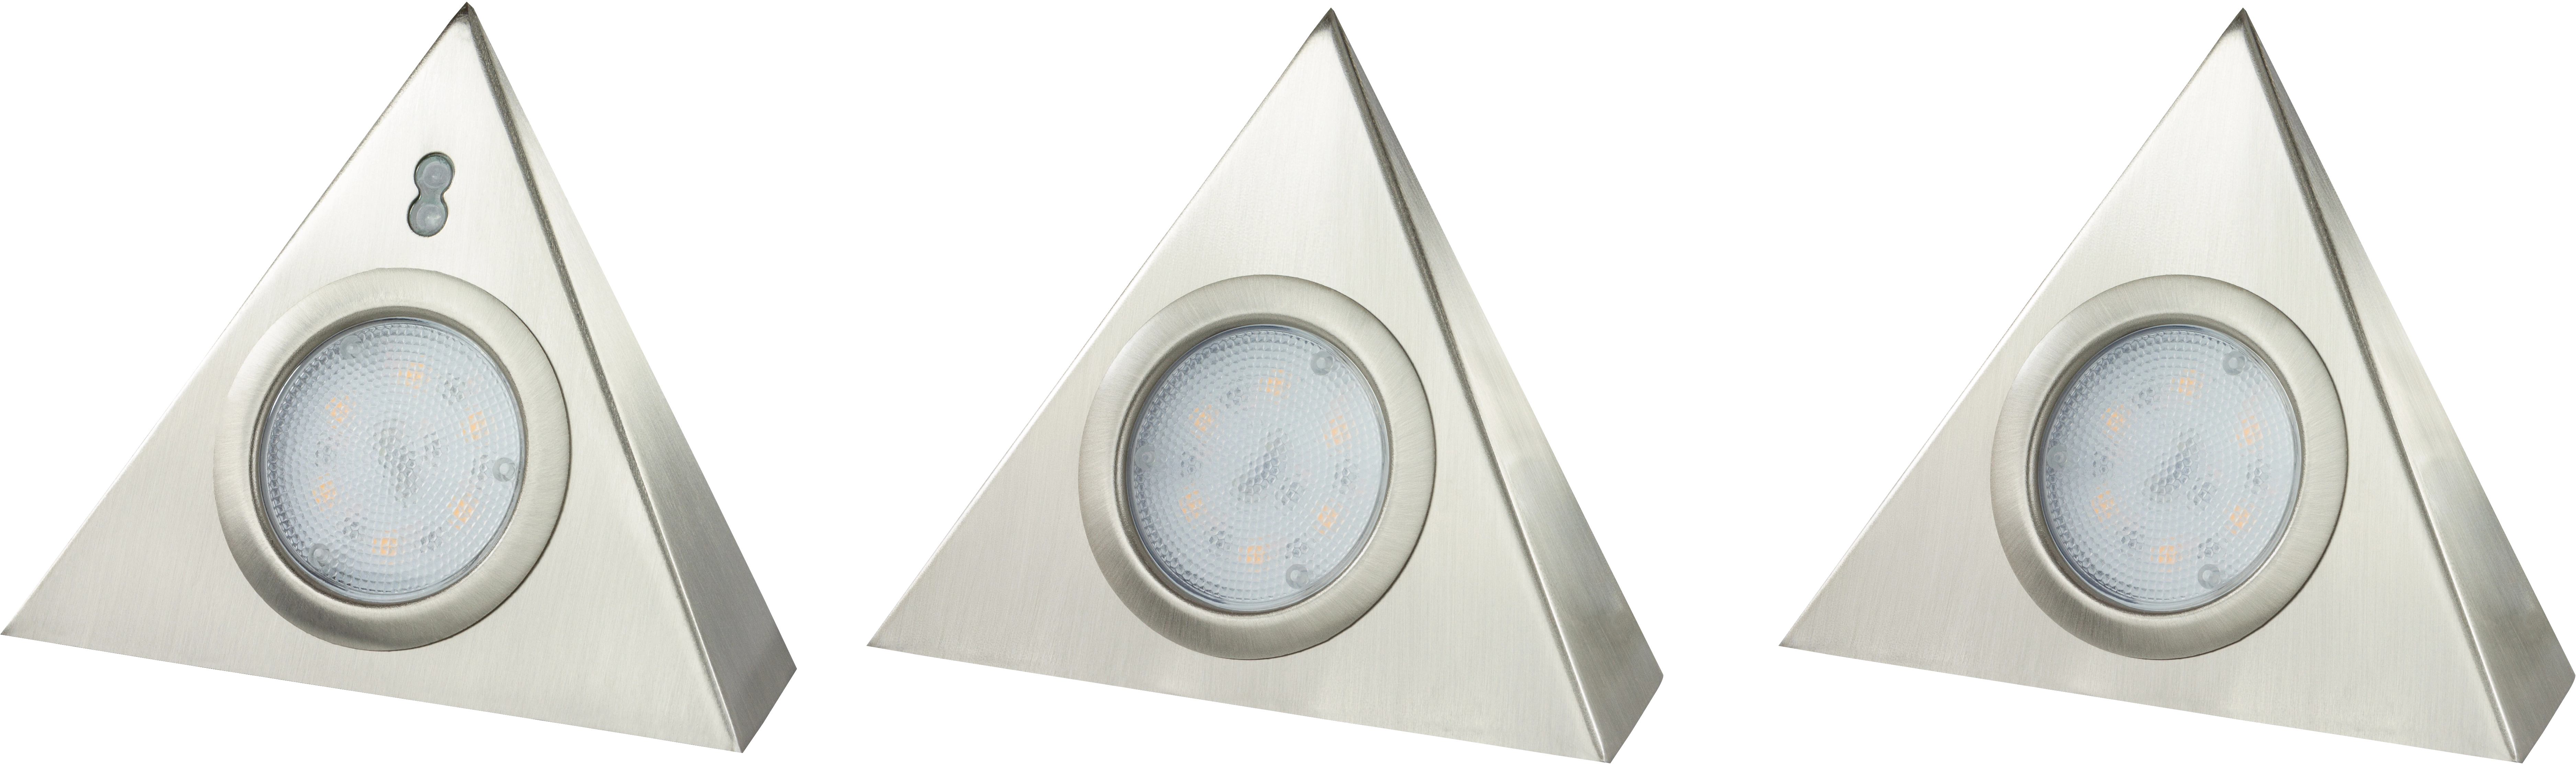 REV Ritter LED-Unterbauleuchten-Set Triangel 3 x 180 lm 3000 K Sensor  Silber kaufen bei OBI